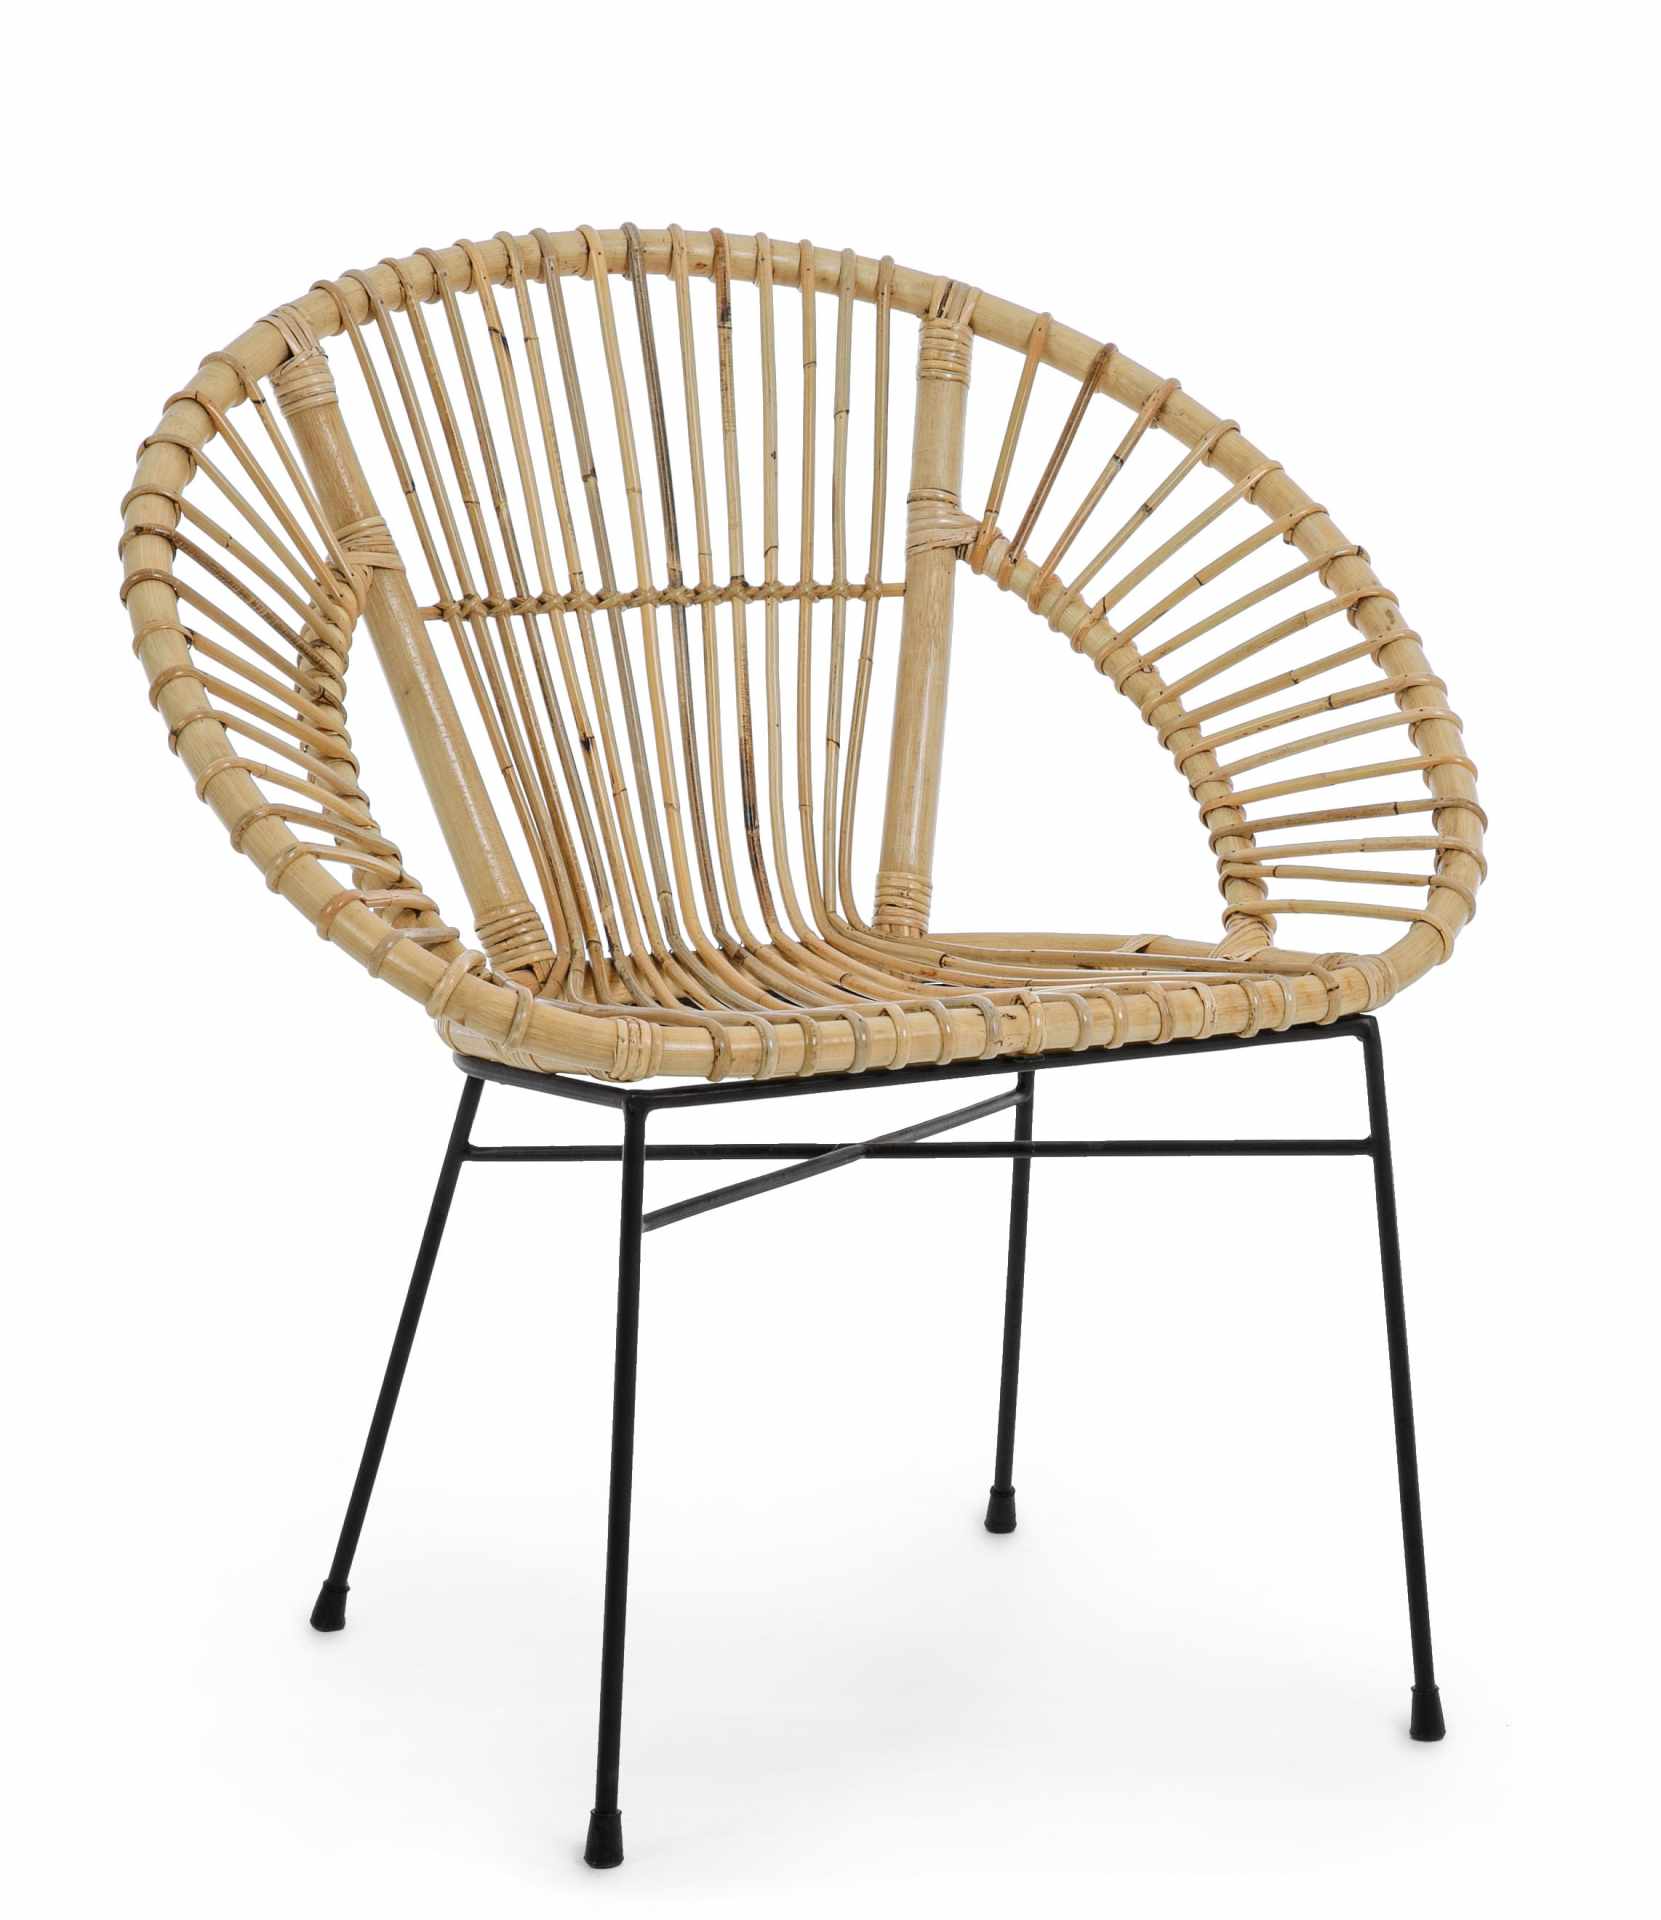 Der Sessel Tolima überzeugt mit seinem klassischen Design. Gefertigt wurde er aus Rattan, welches einen natürlichen Farbton besitzt. Das Gestell ist aus Metall und hat eine schwarze Farbe. Der Sessel besitzt eine Sitzhöhe von 42 cm. Die Breite beträgt 58 